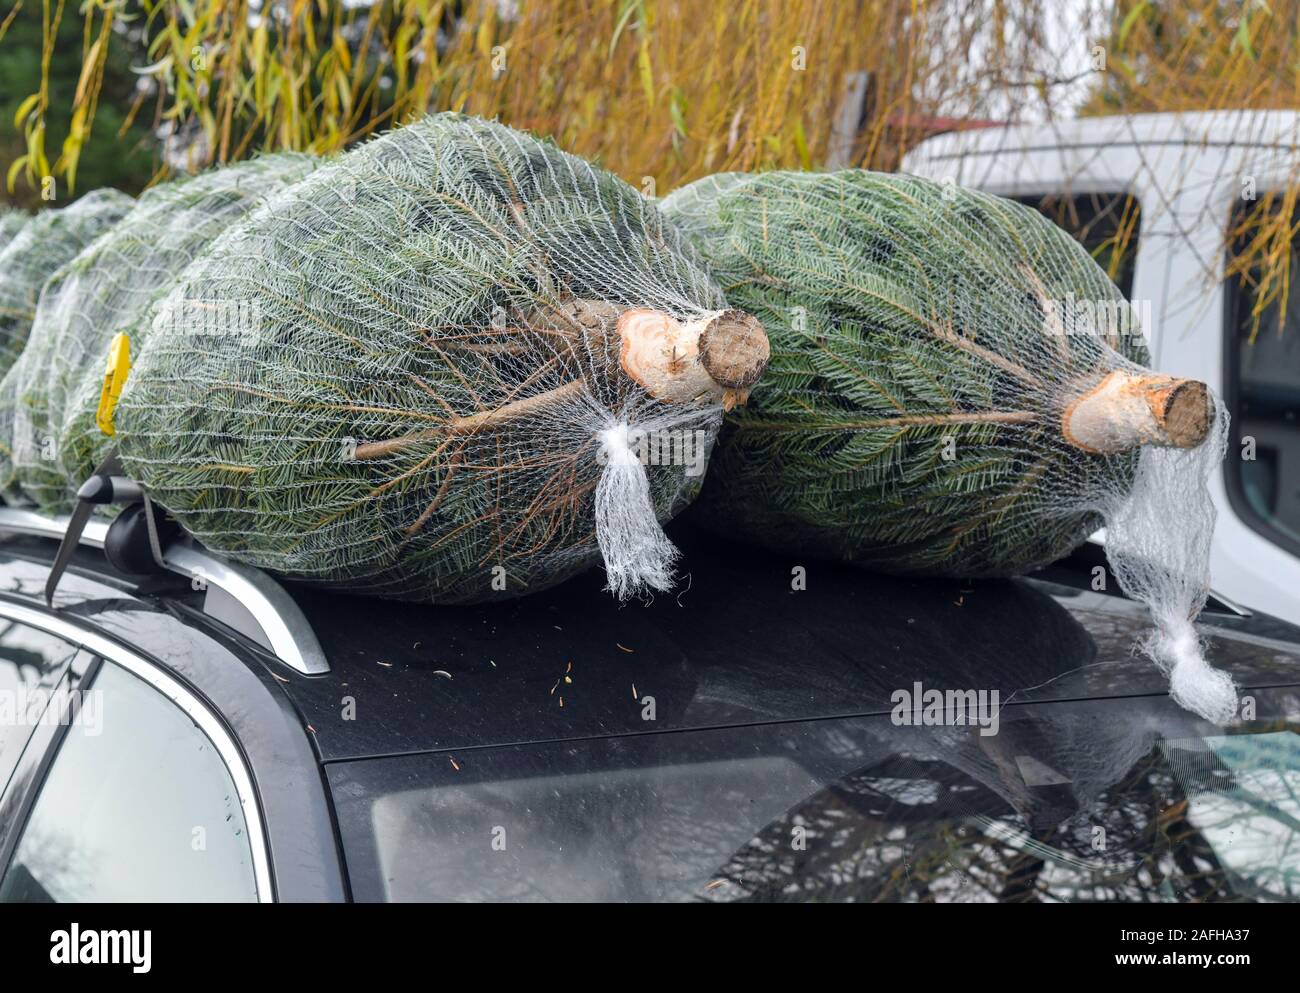 14 Dezember 2019, Brandenburg, Tempelberg: Zwei Weihnachtsbäume in einem  Netz liegen auf einem Dach Auto verpackt und wurden ordnungsgemäß mit einem  Spanngurt befestigt. Foto: Patrick Pleul/dpa-Zentralbild/ZB Stockfotografie  - Alamy